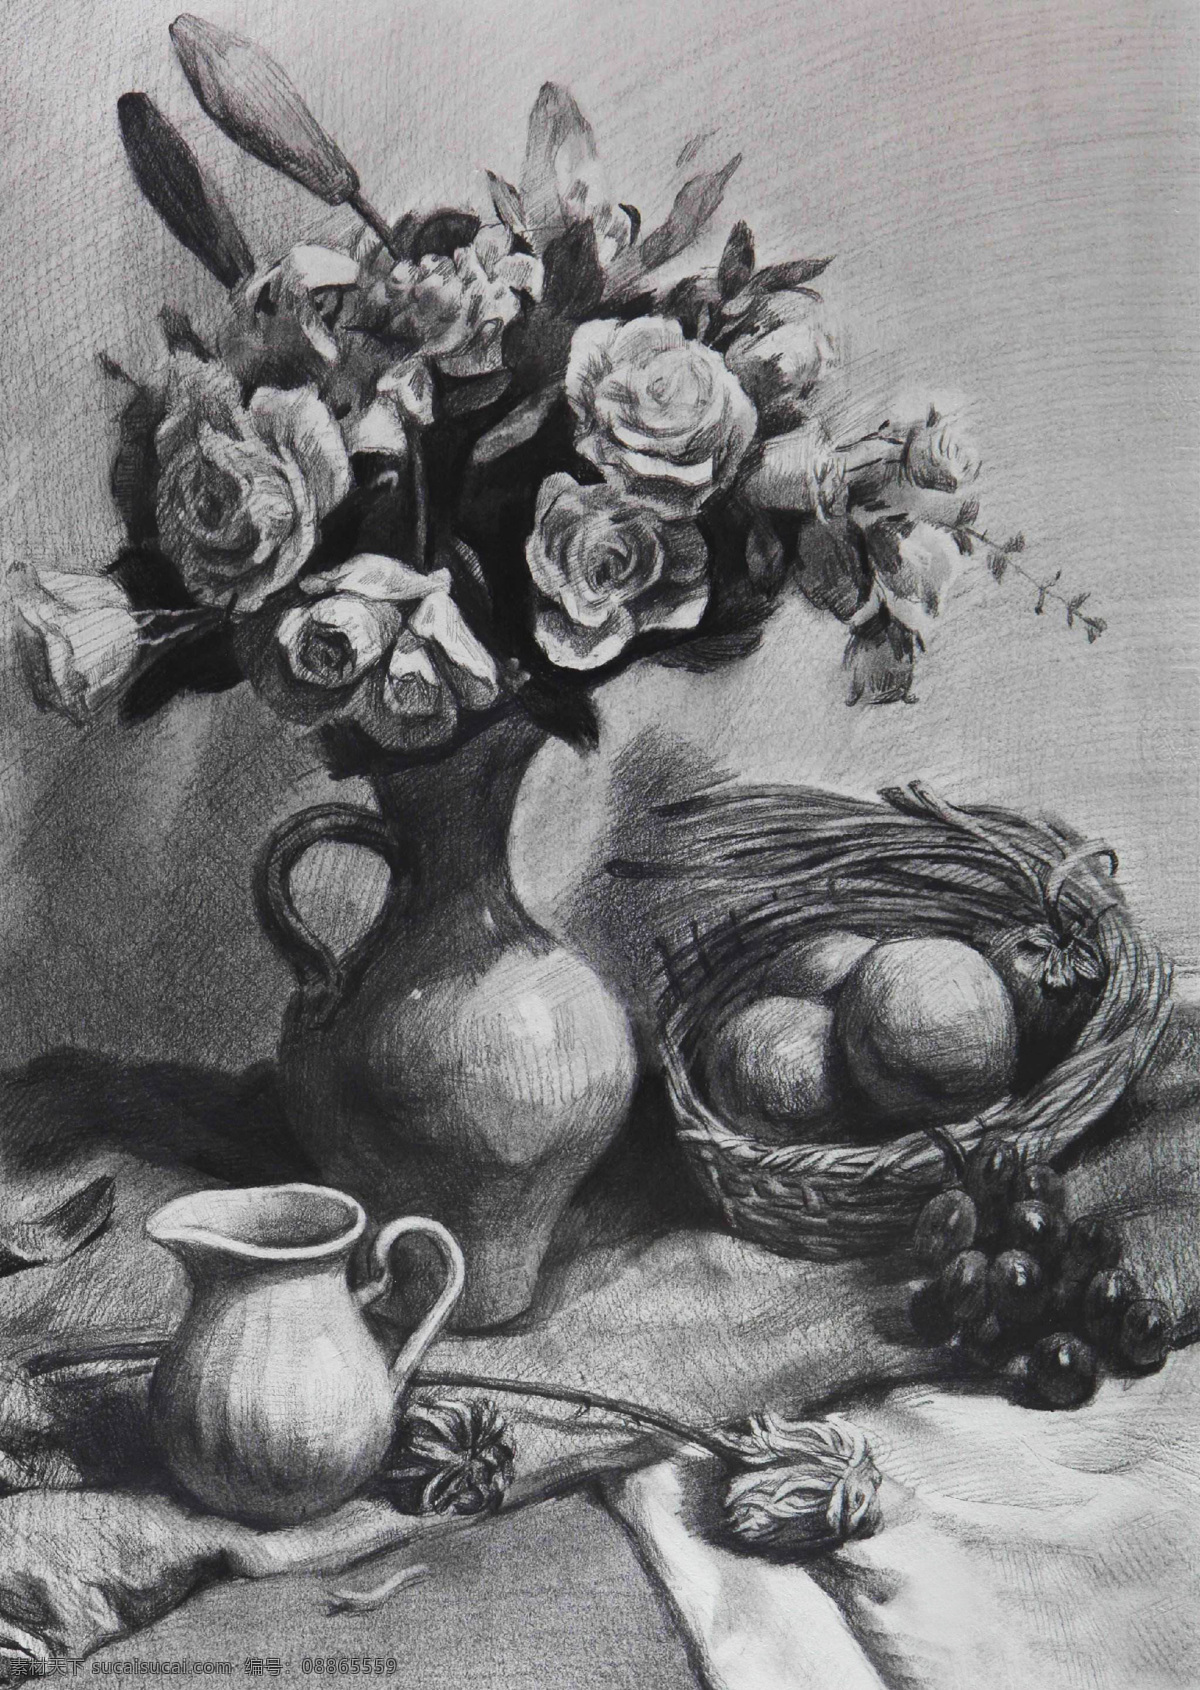 素描 素描静物 静物素描 素描作品 罐子 鲜花 篮子 水果 艺术绘画 文化艺术 绘画书法